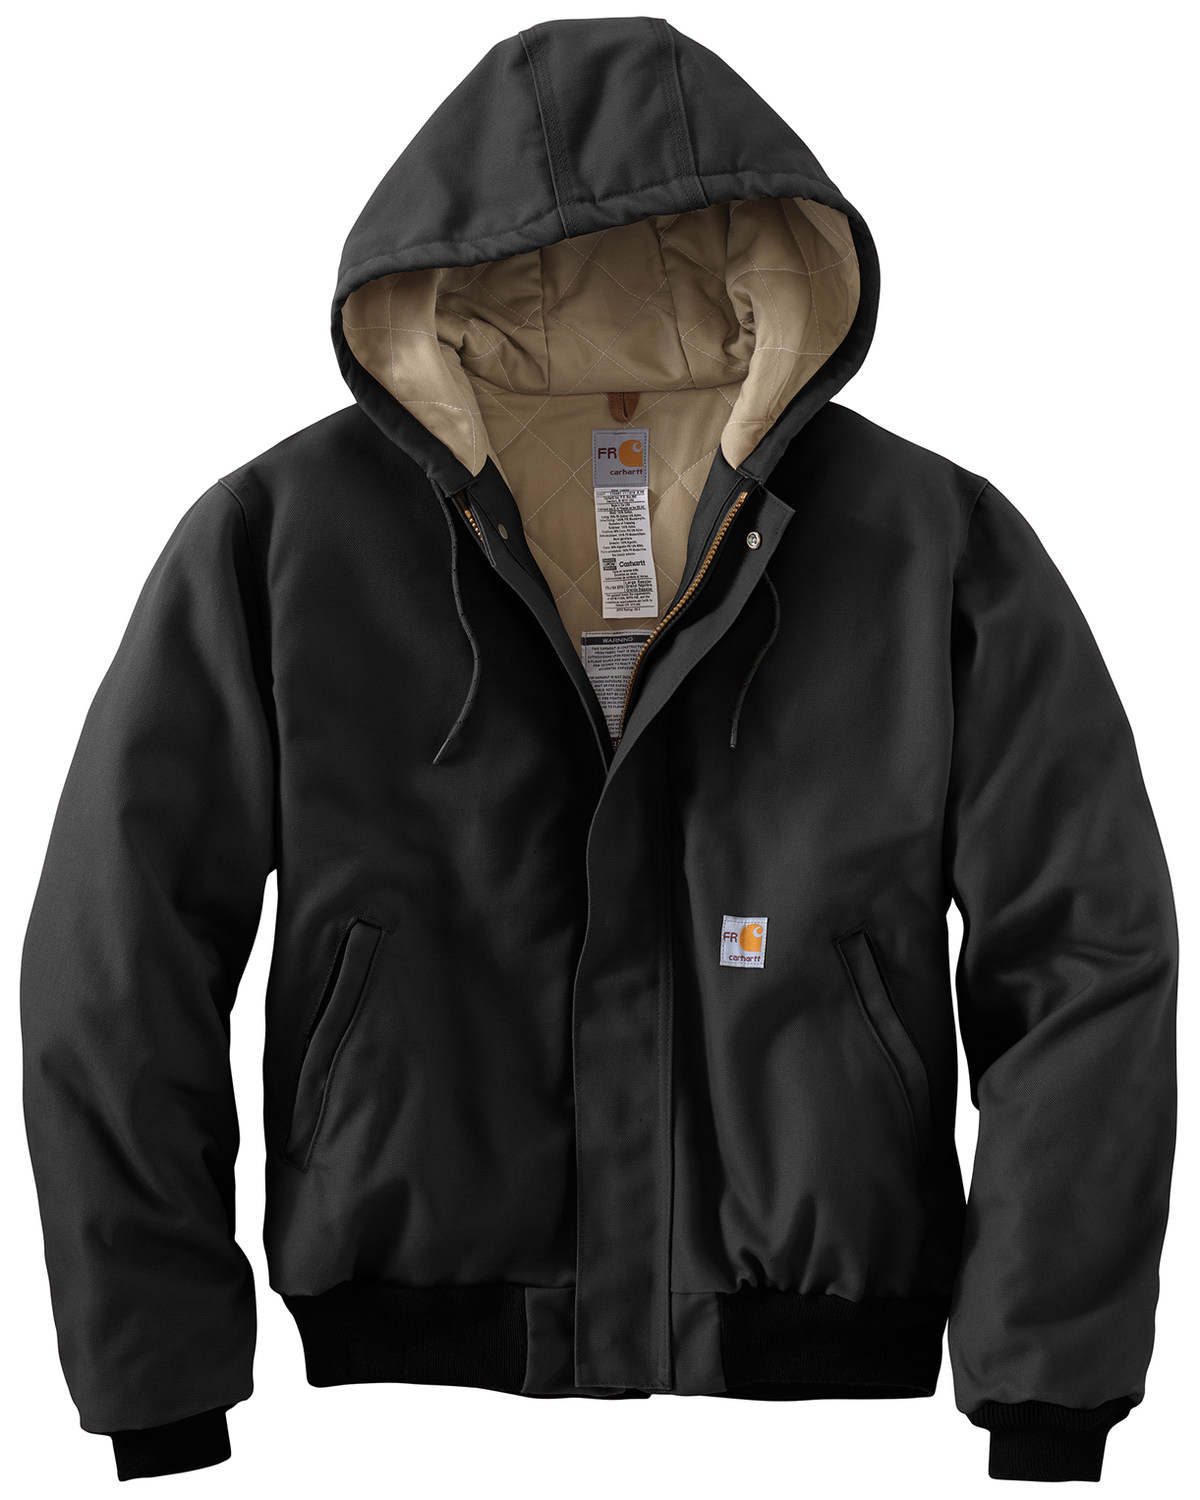 Carhartt Men's FR Duck Active Hooded Jacket